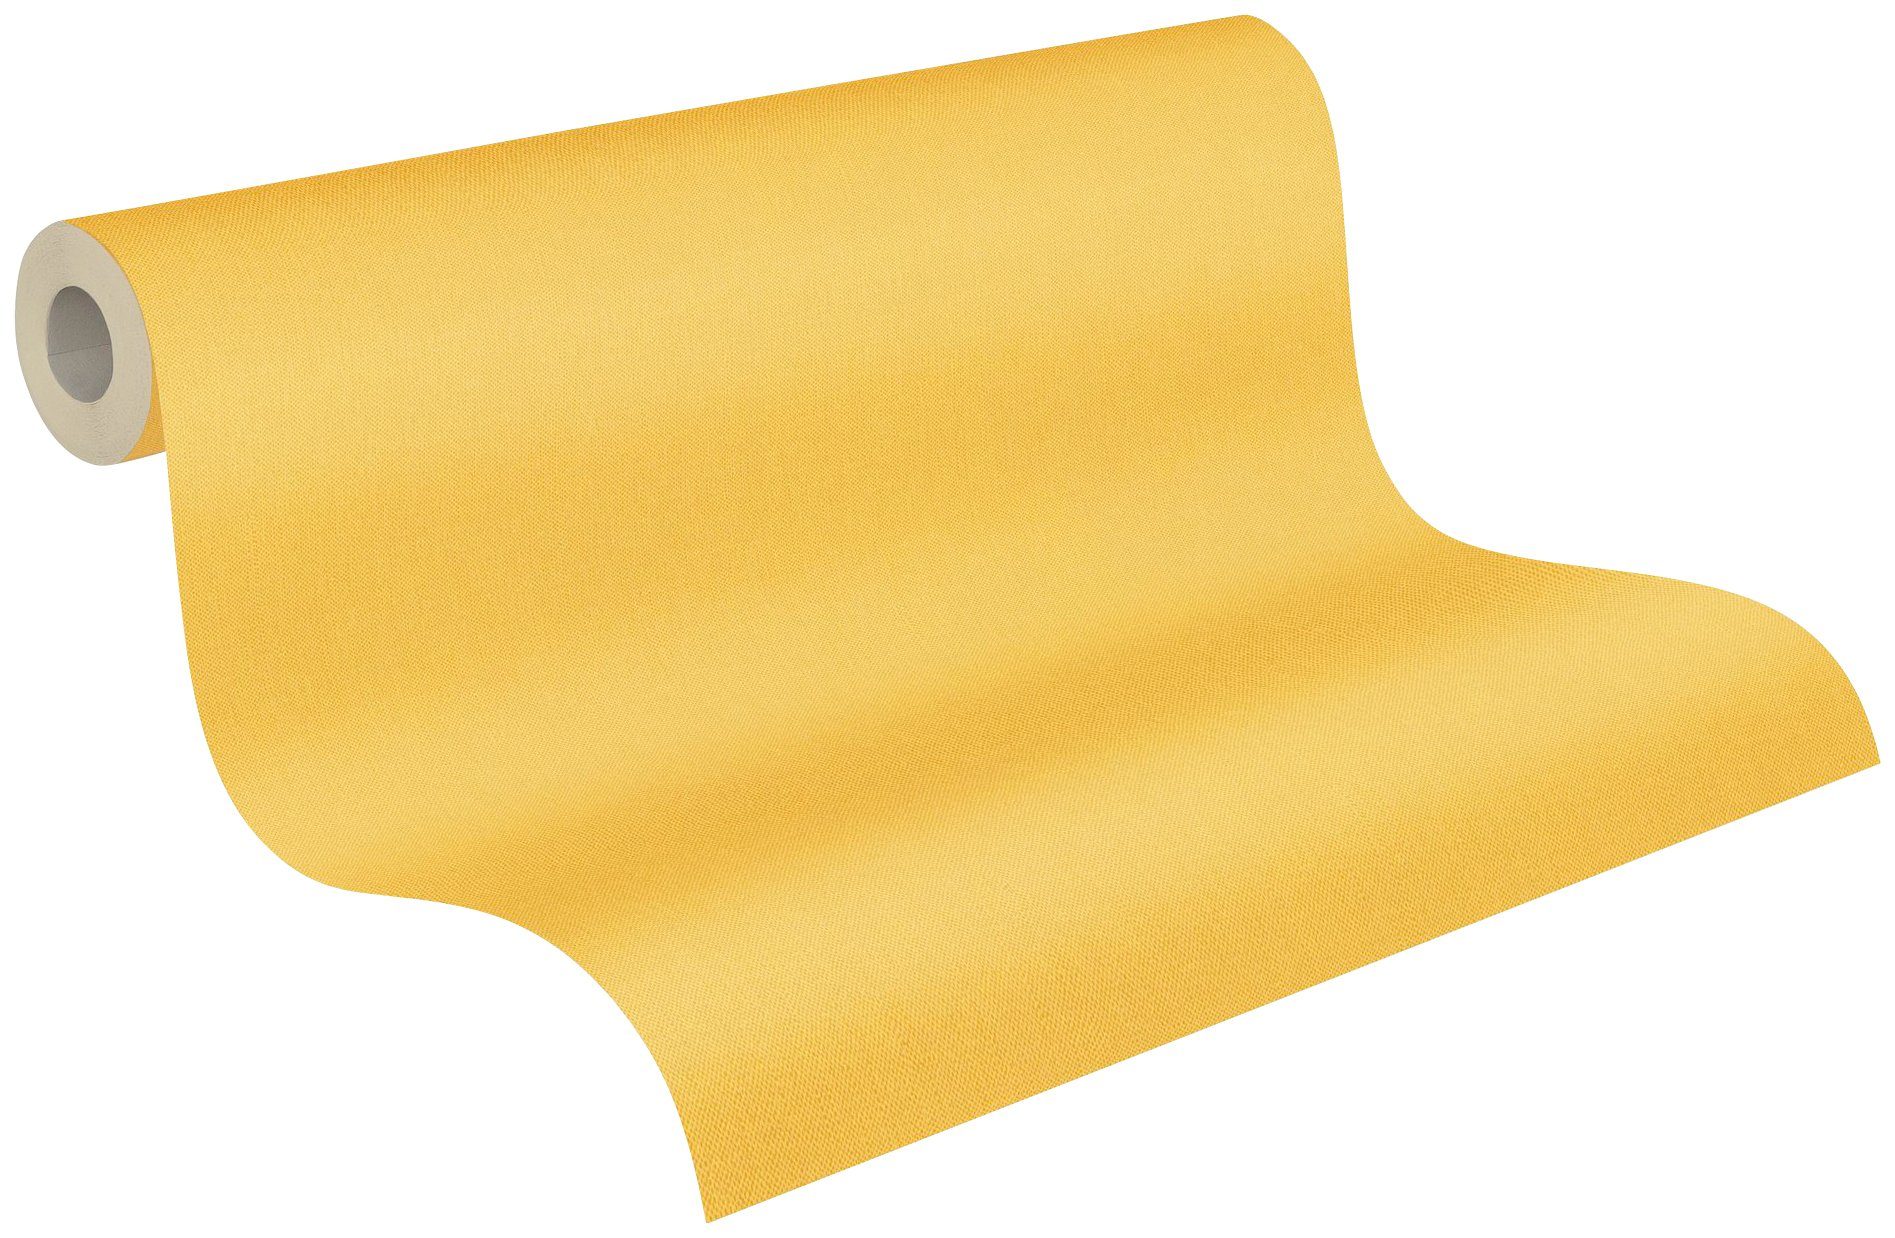 Vliestapete gelb Floral unifarben, einfarbig, Paper Architects Tapete Impression, einfarbig Uni glatt,